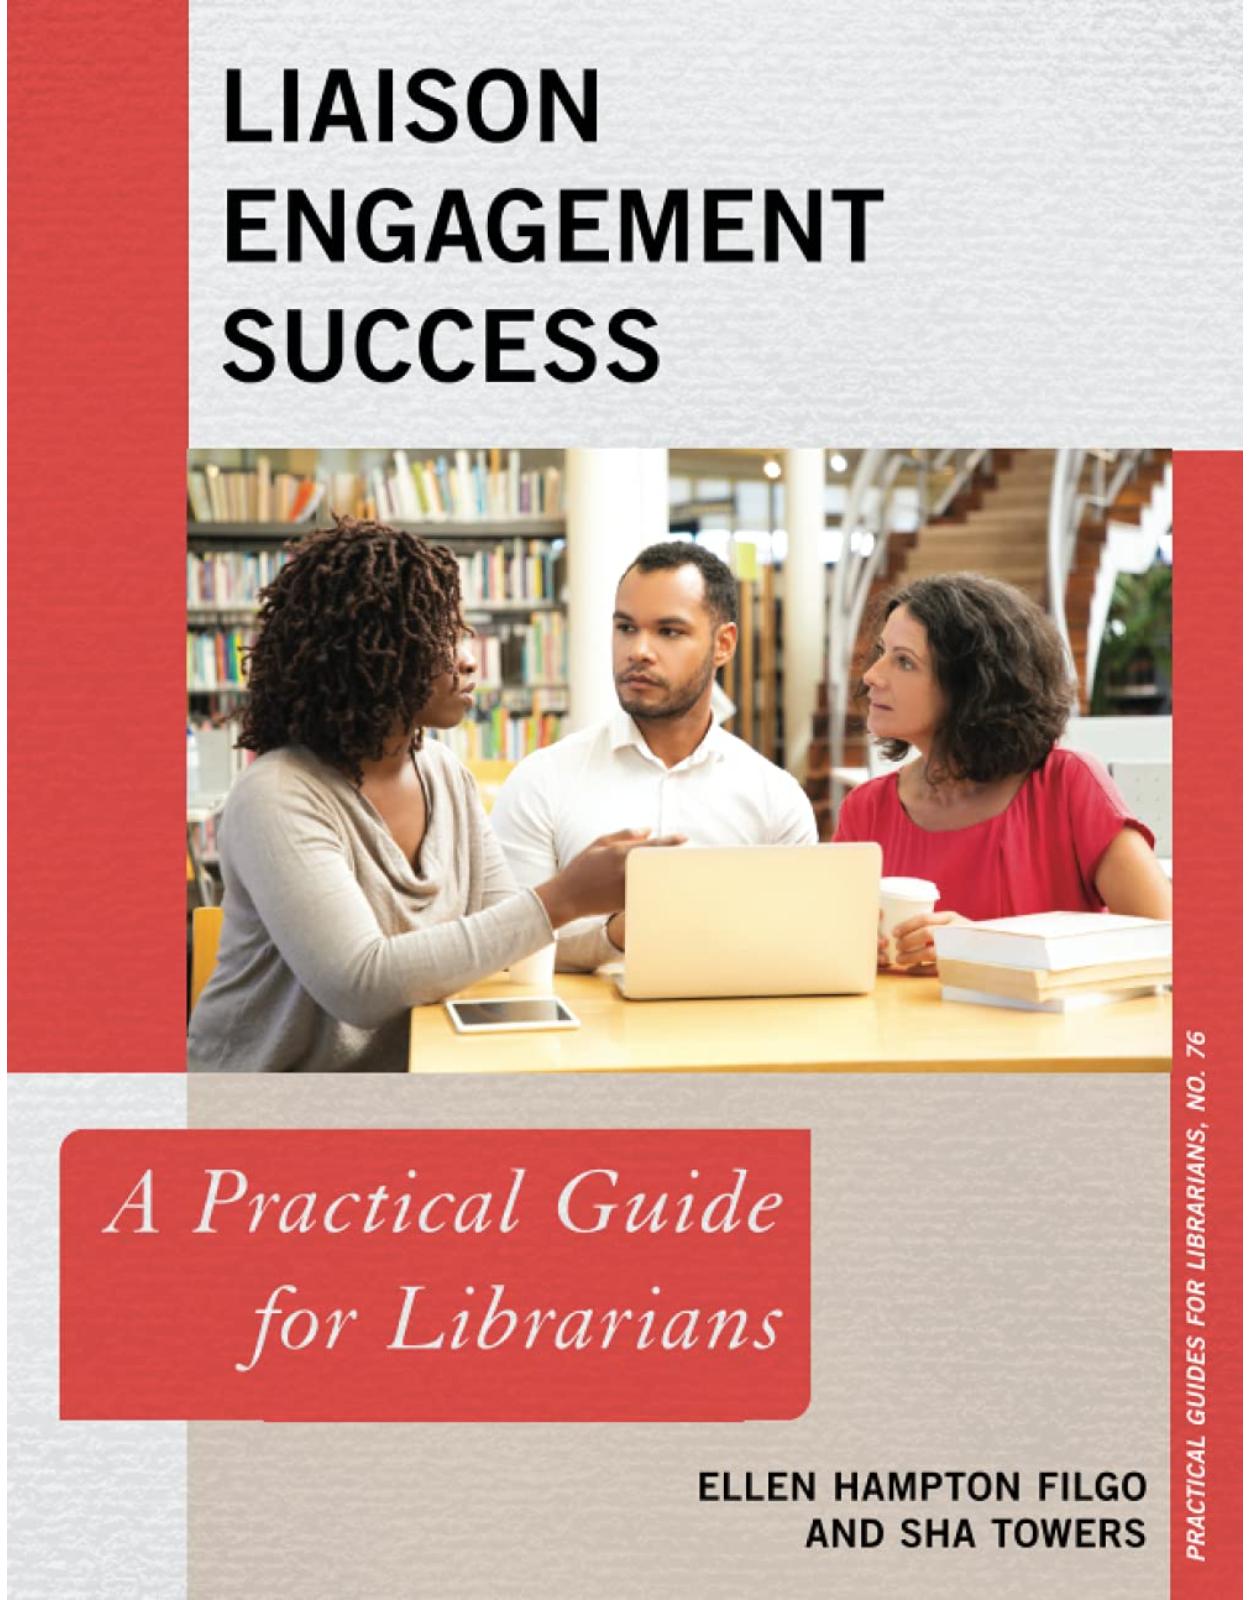 Liaison Engagement Success: A Practical Guide for Librarians: 76 (Practical Guides for Librarians)